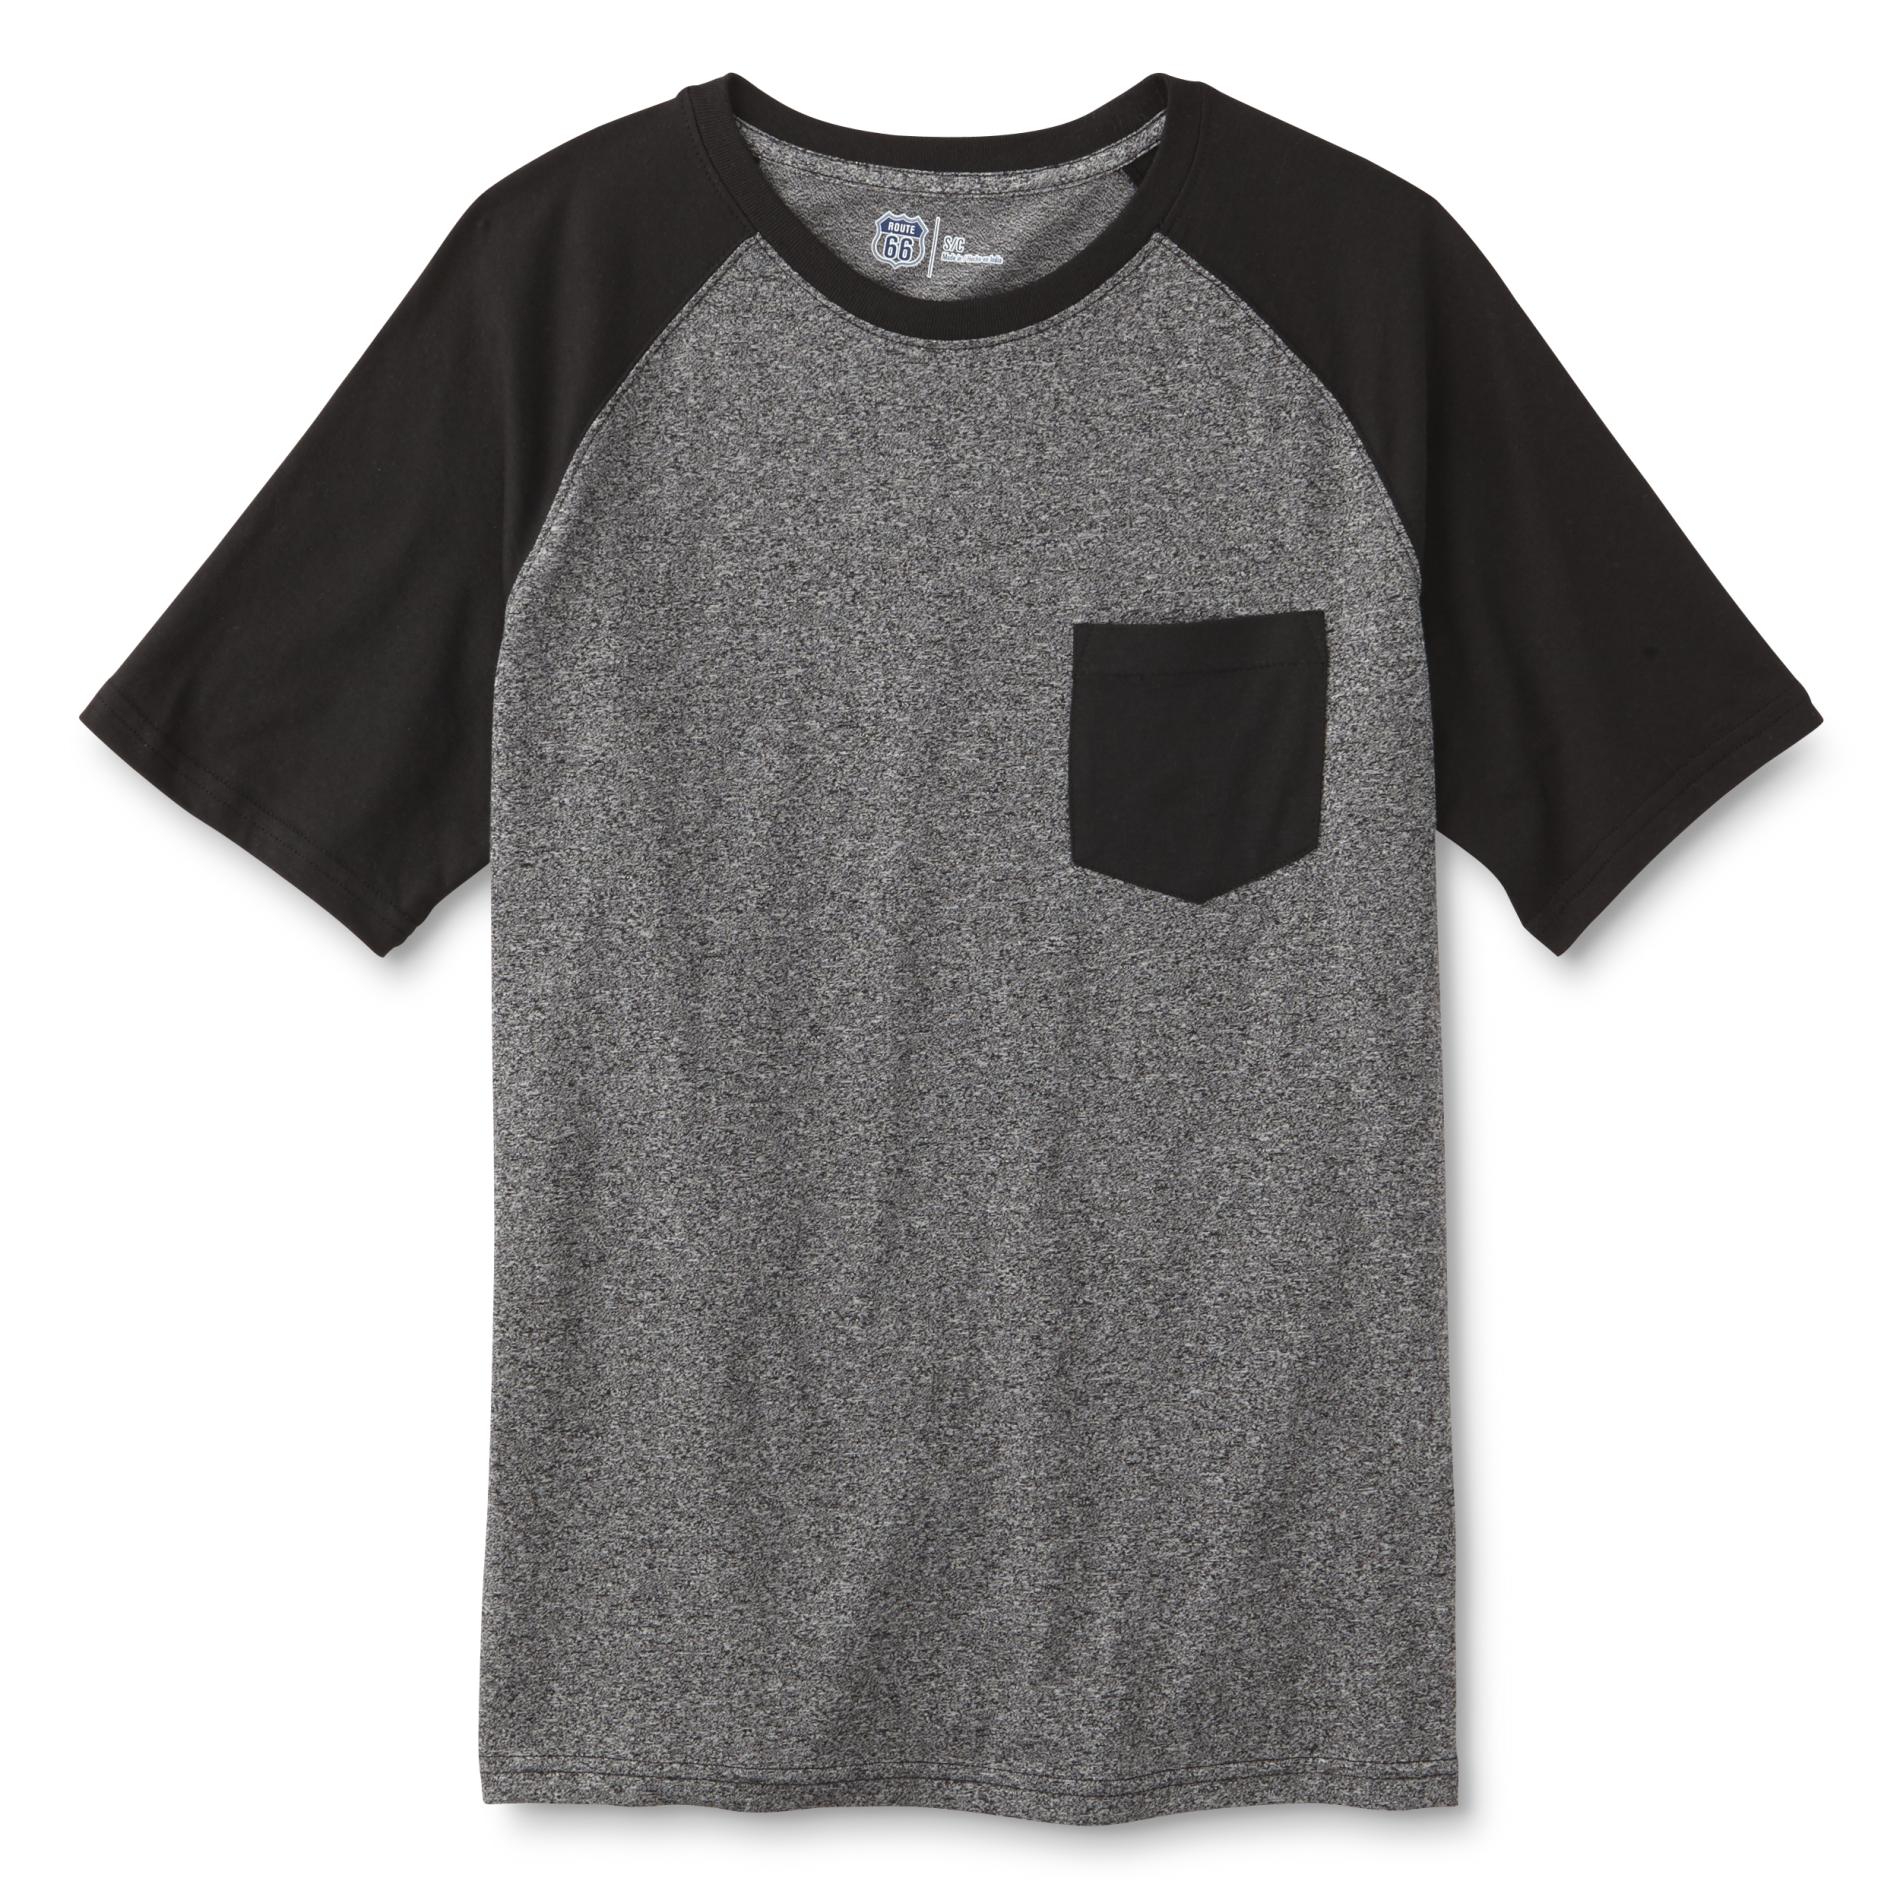 Route 66 Men's Pocket T-Shirt - Colorblock